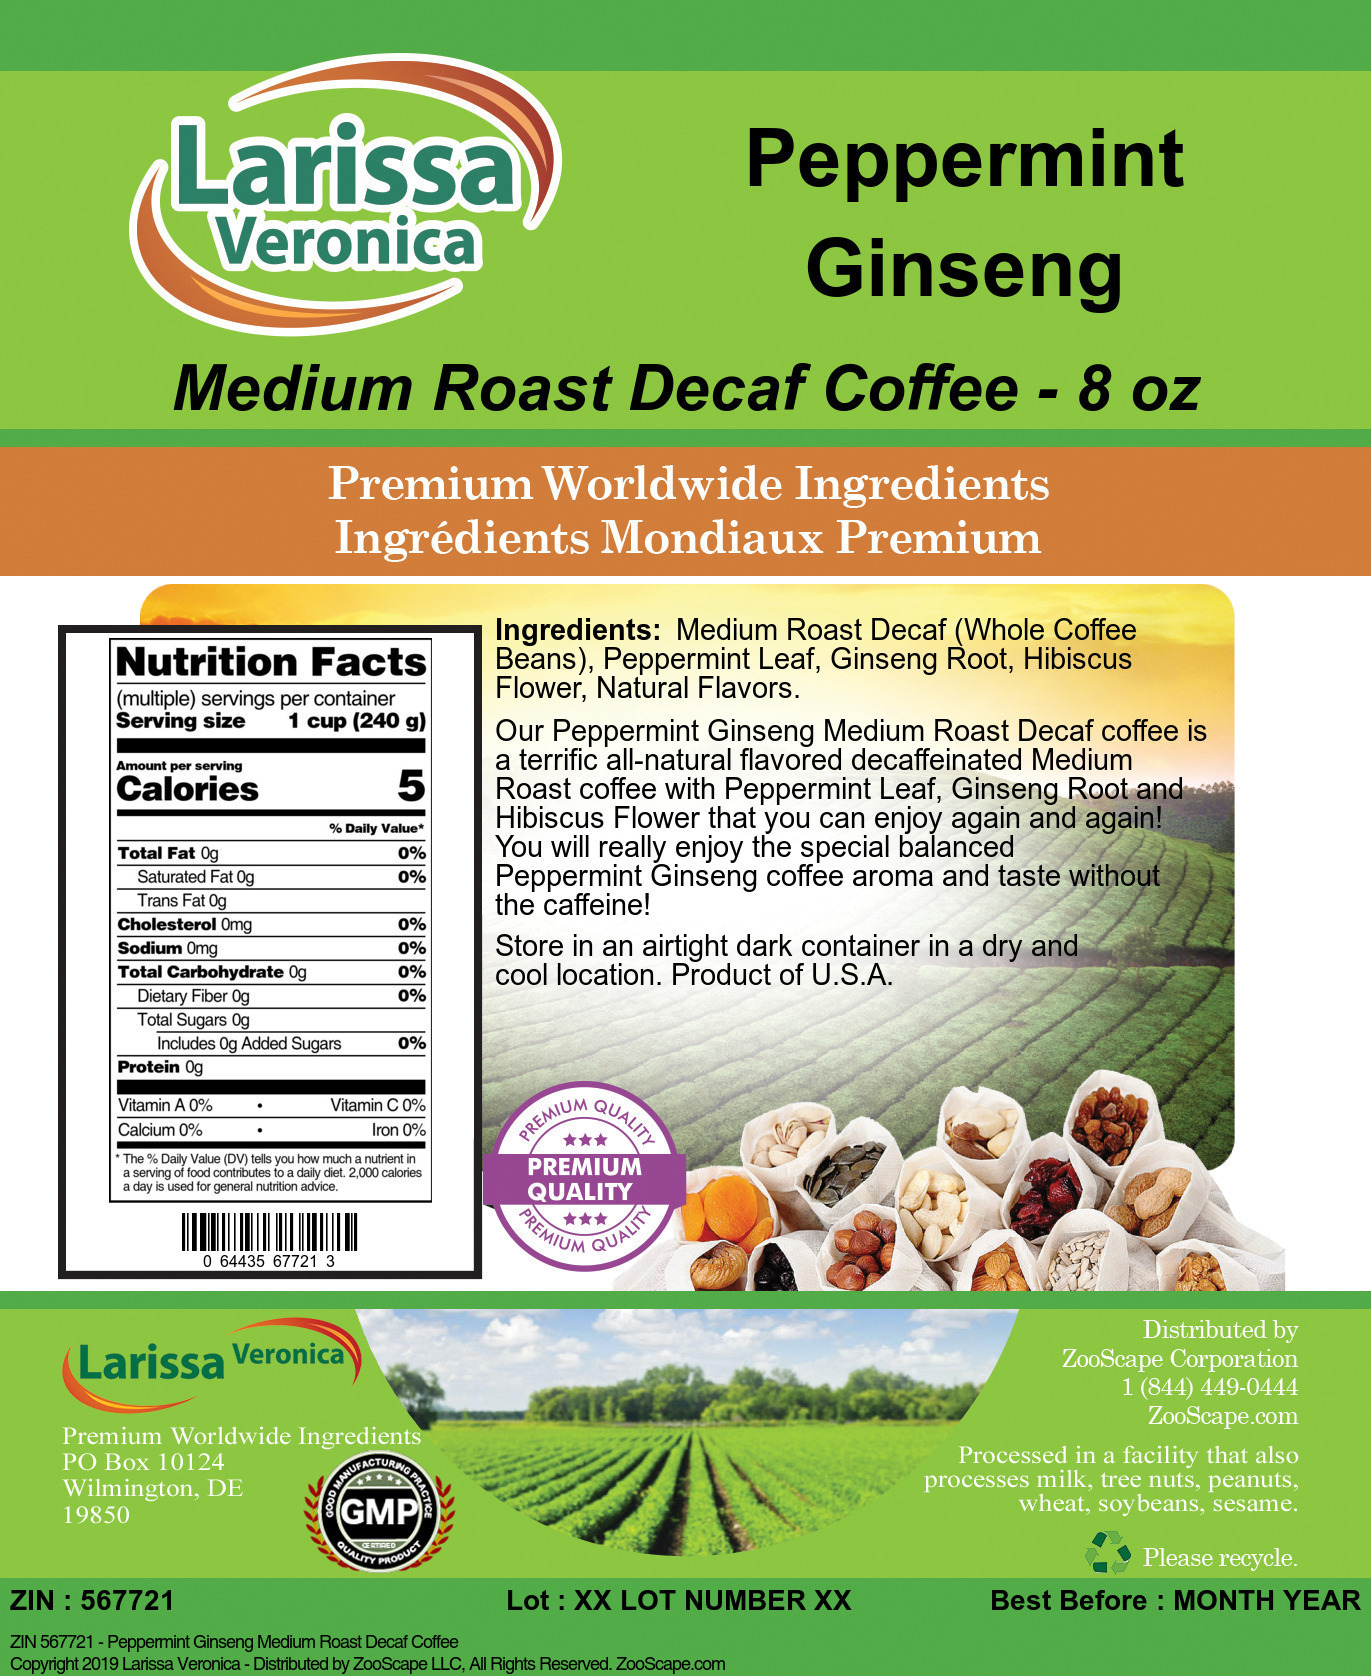 Peppermint Ginseng Medium Roast Decaf Coffee - Label